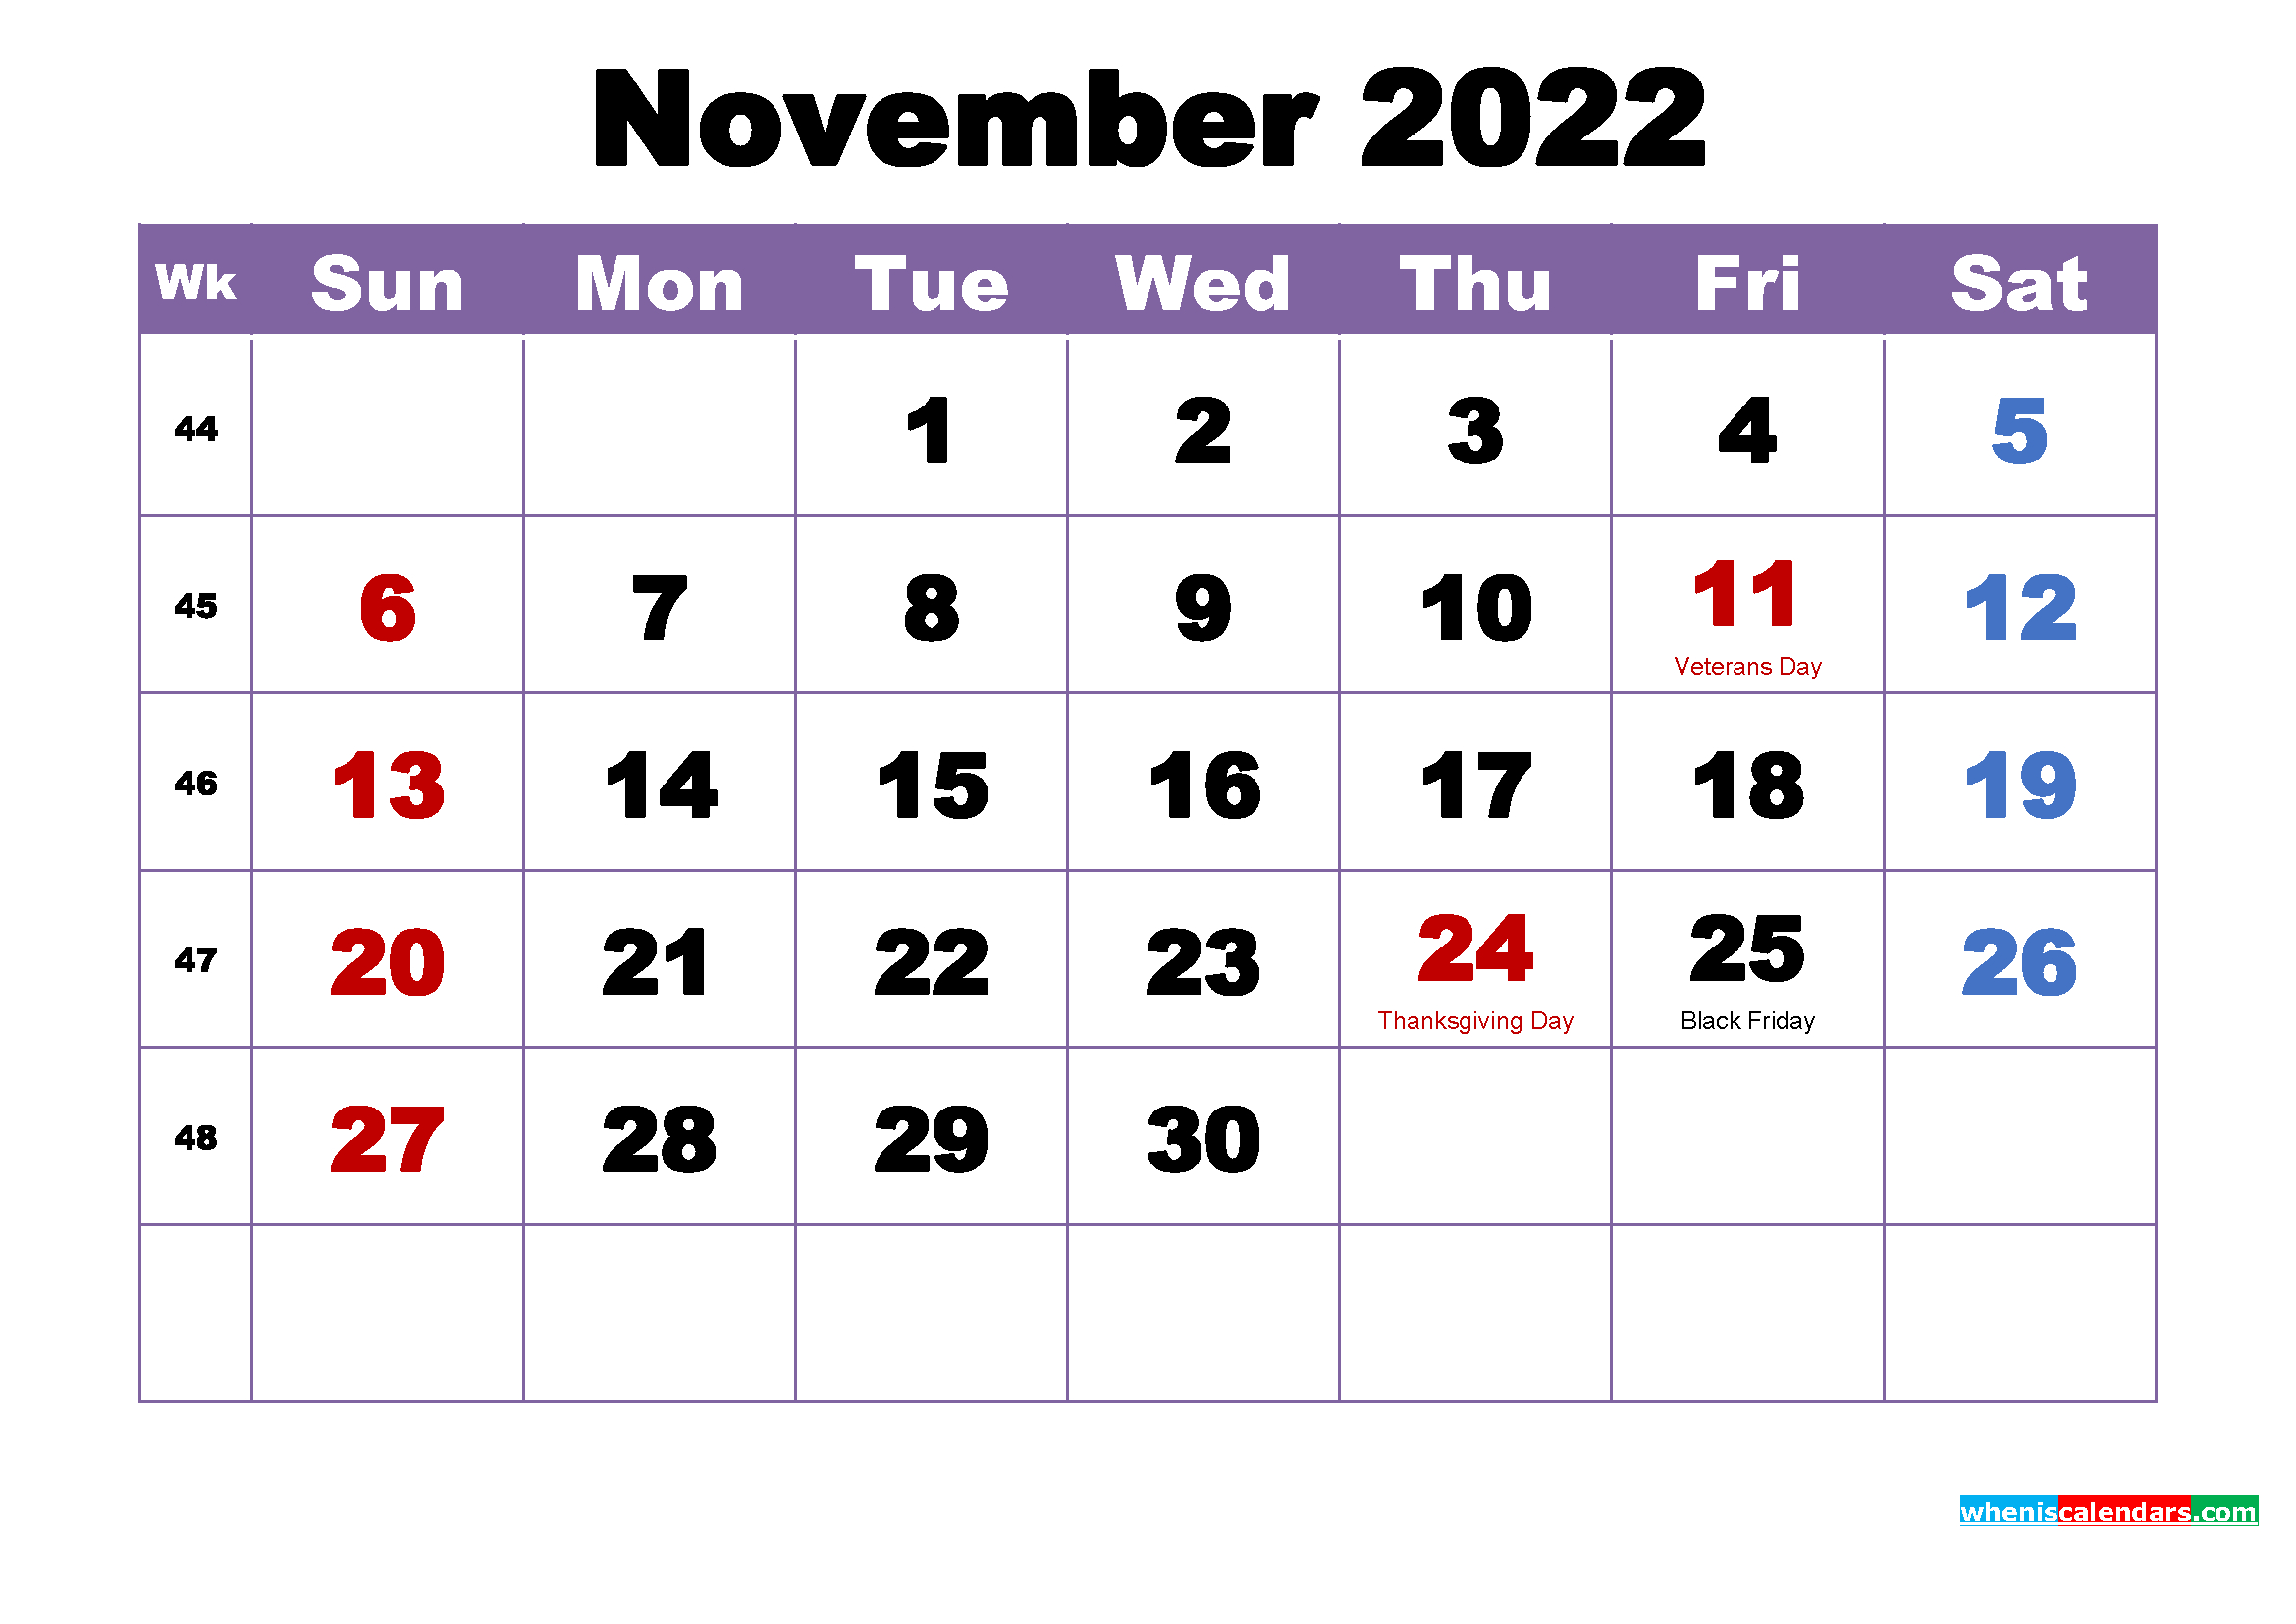 Easter 2022 Calendar November